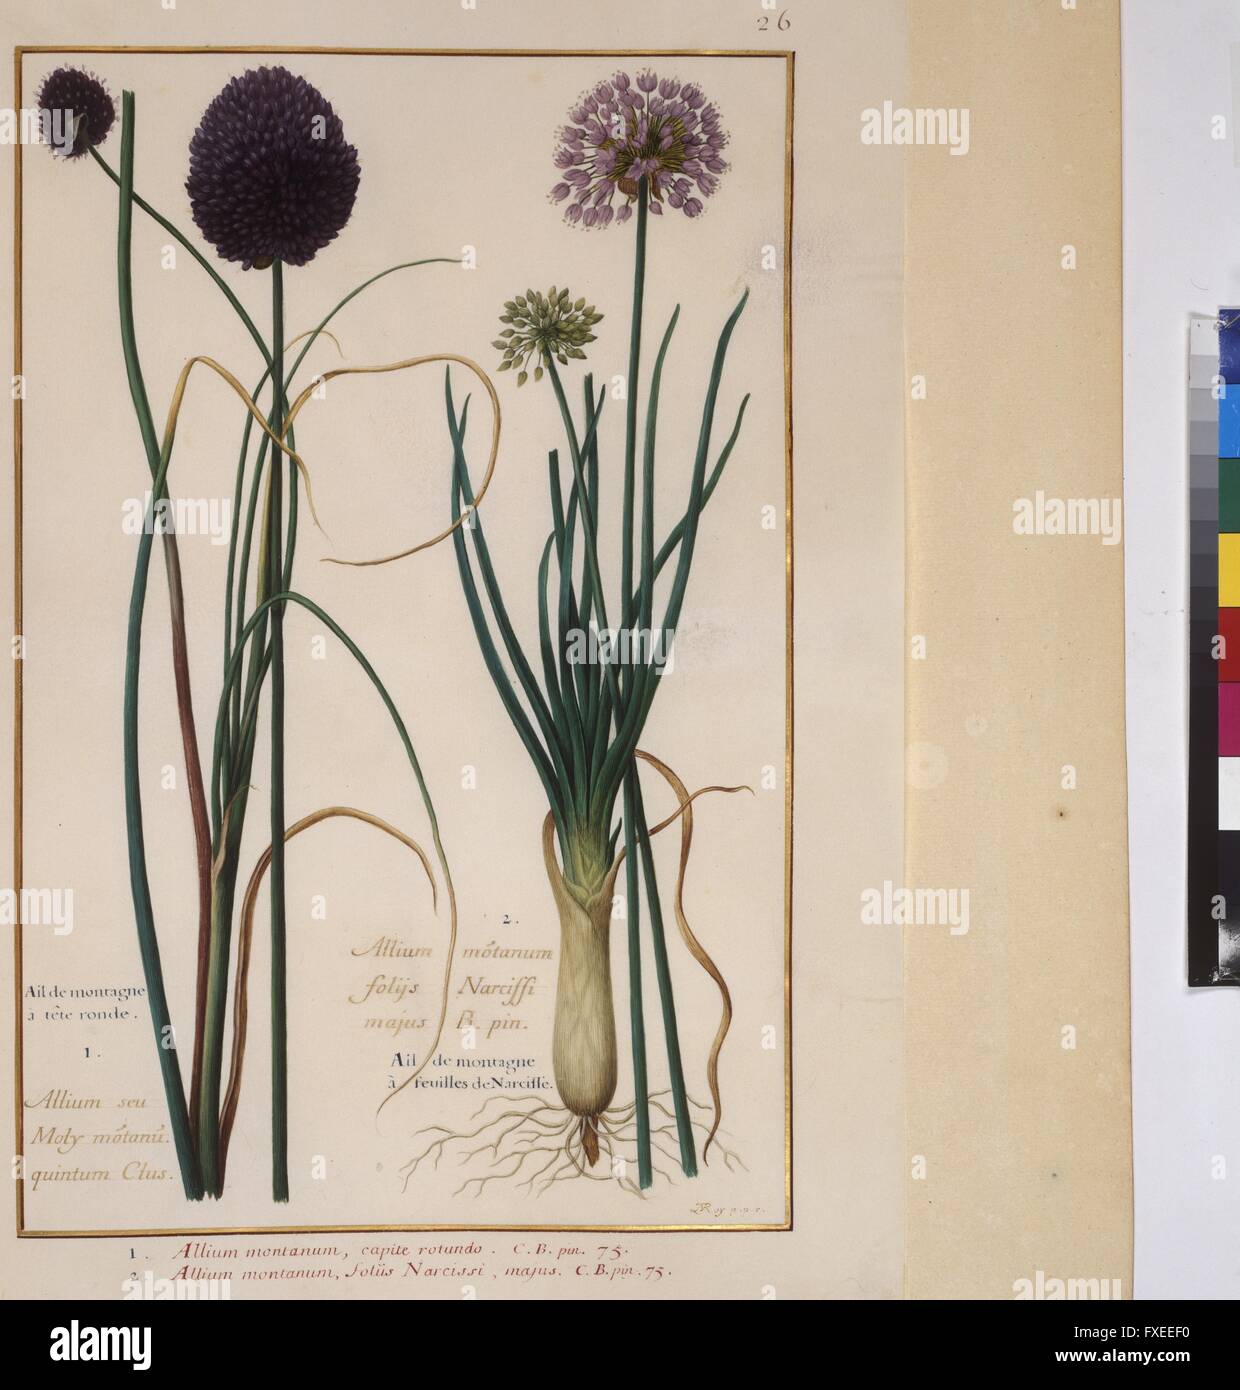 Cod. Min. 53, Bd. 1, fol. 26r: Florilegium des Prinzen Eugen von Savoyen: Allium montanum - Lauch Stock Photo